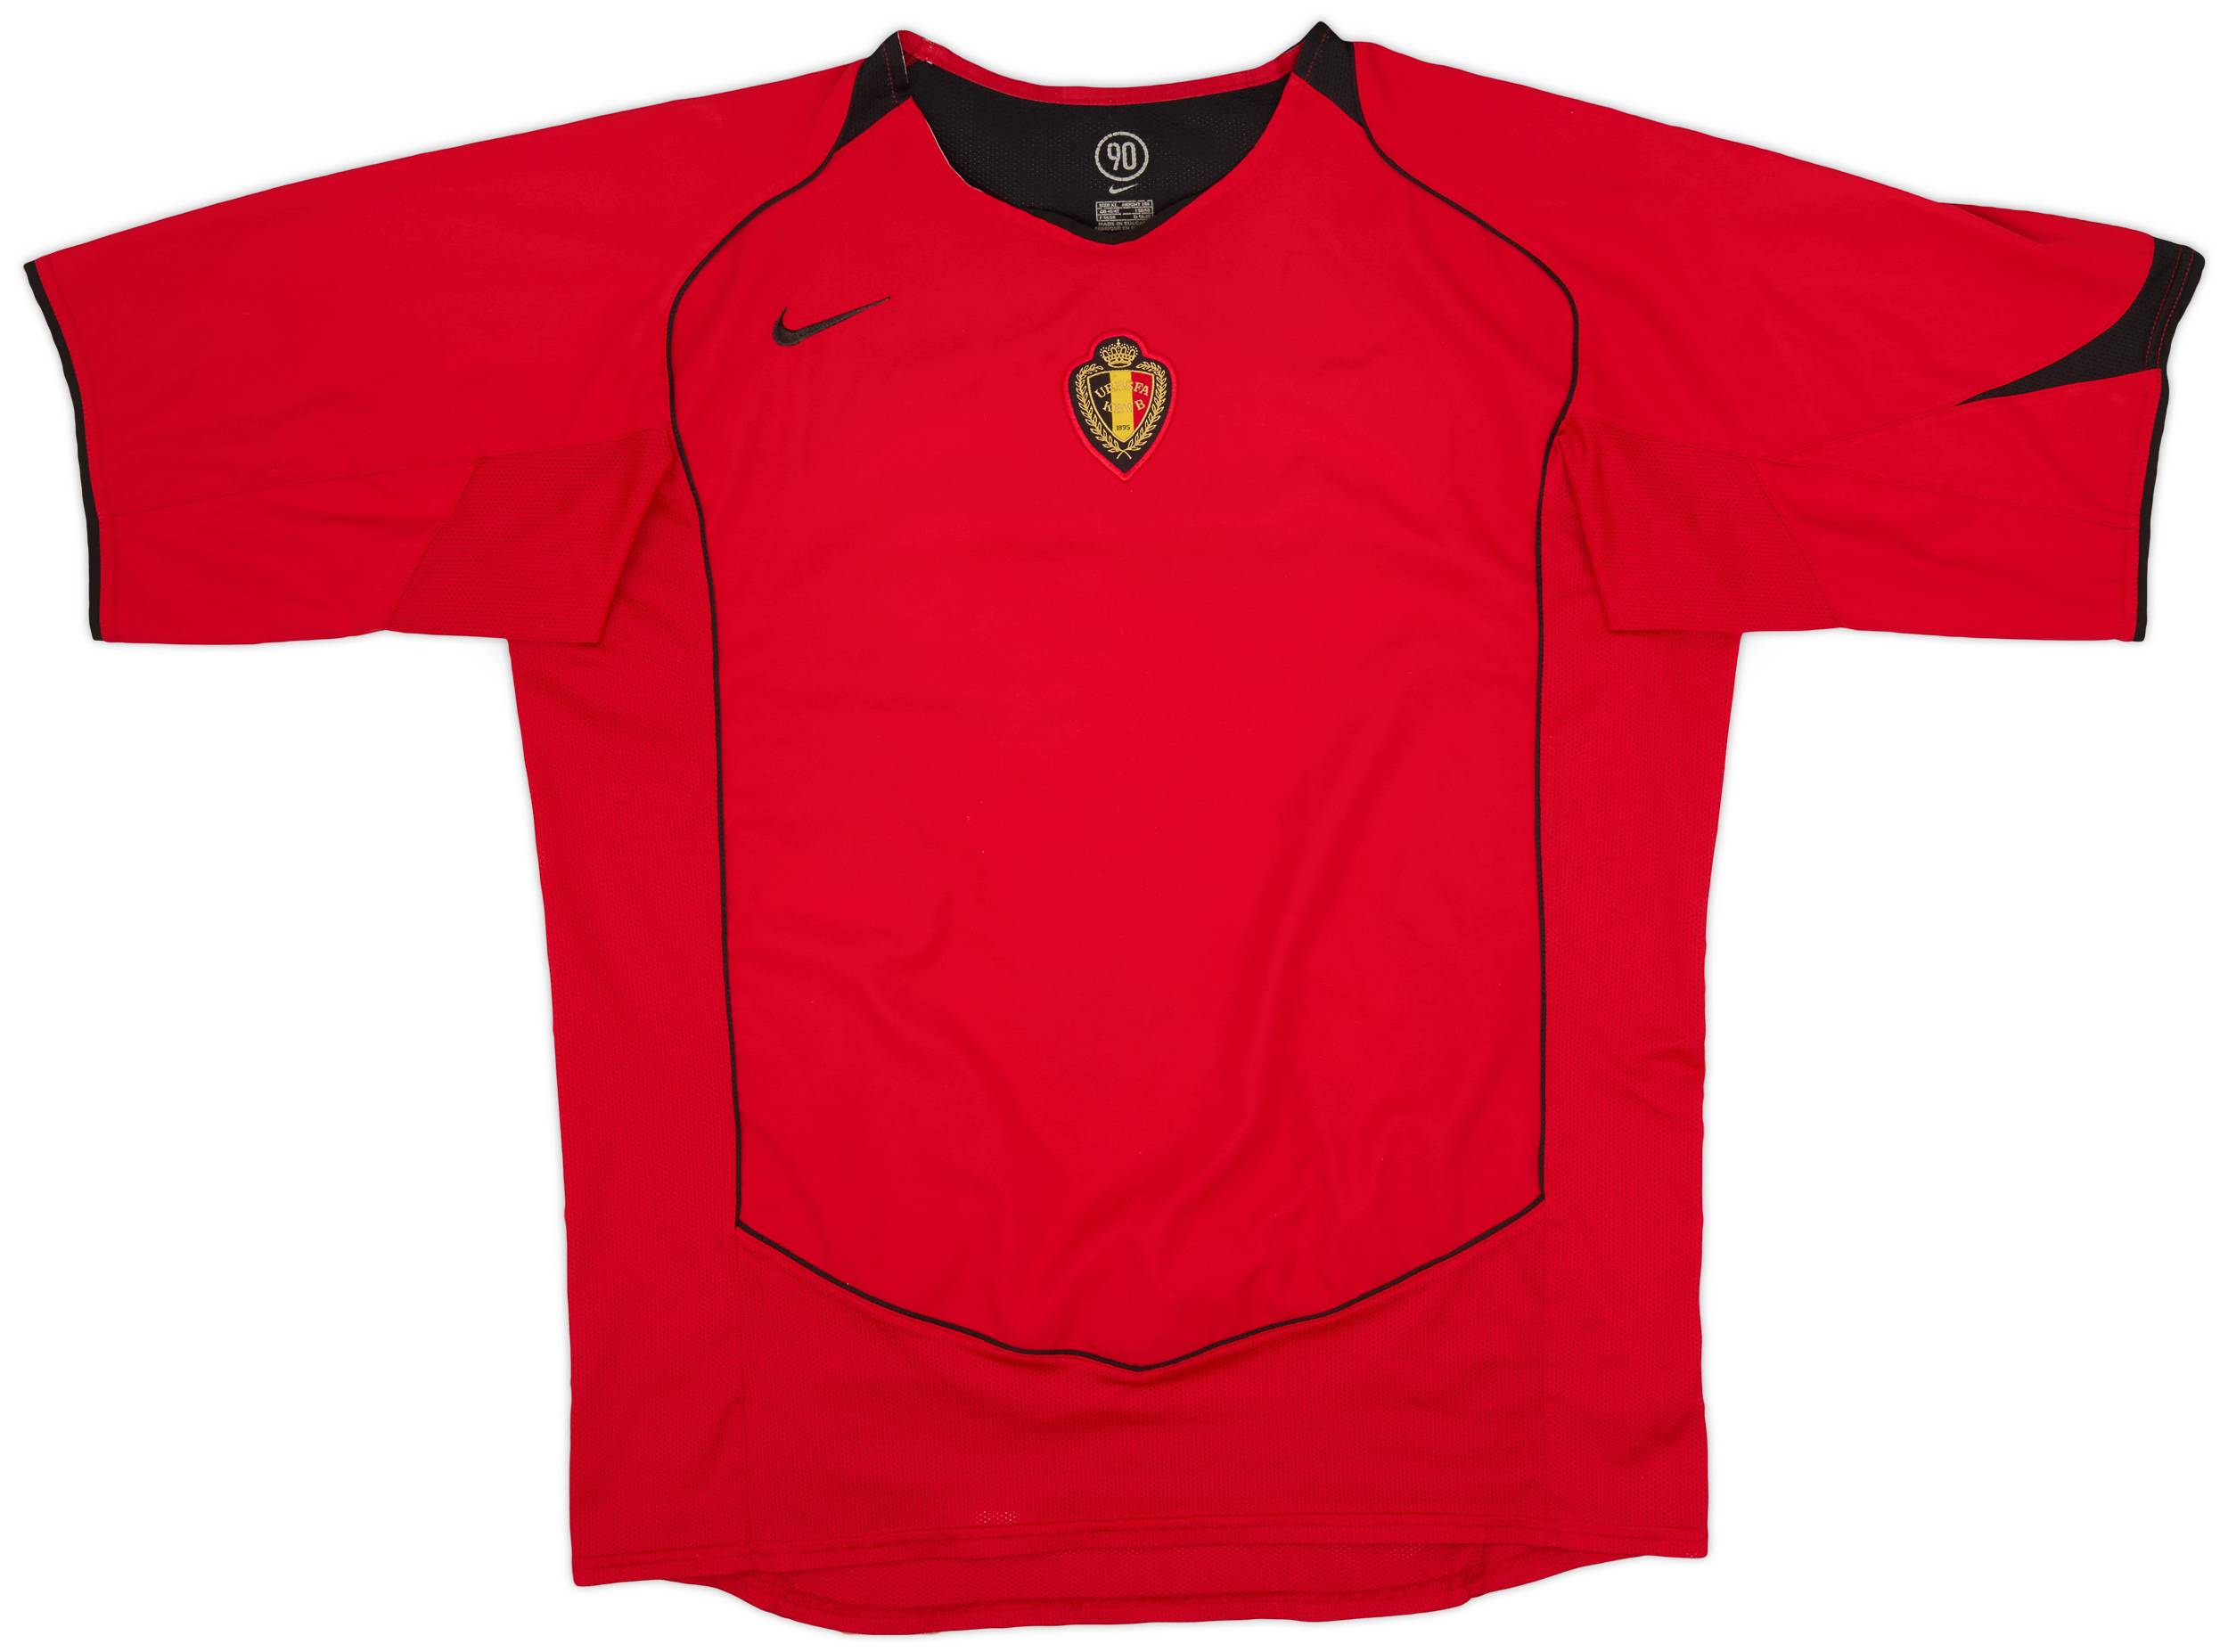 2004-06 Belgium Home Shirt - 9/10 - (XL)